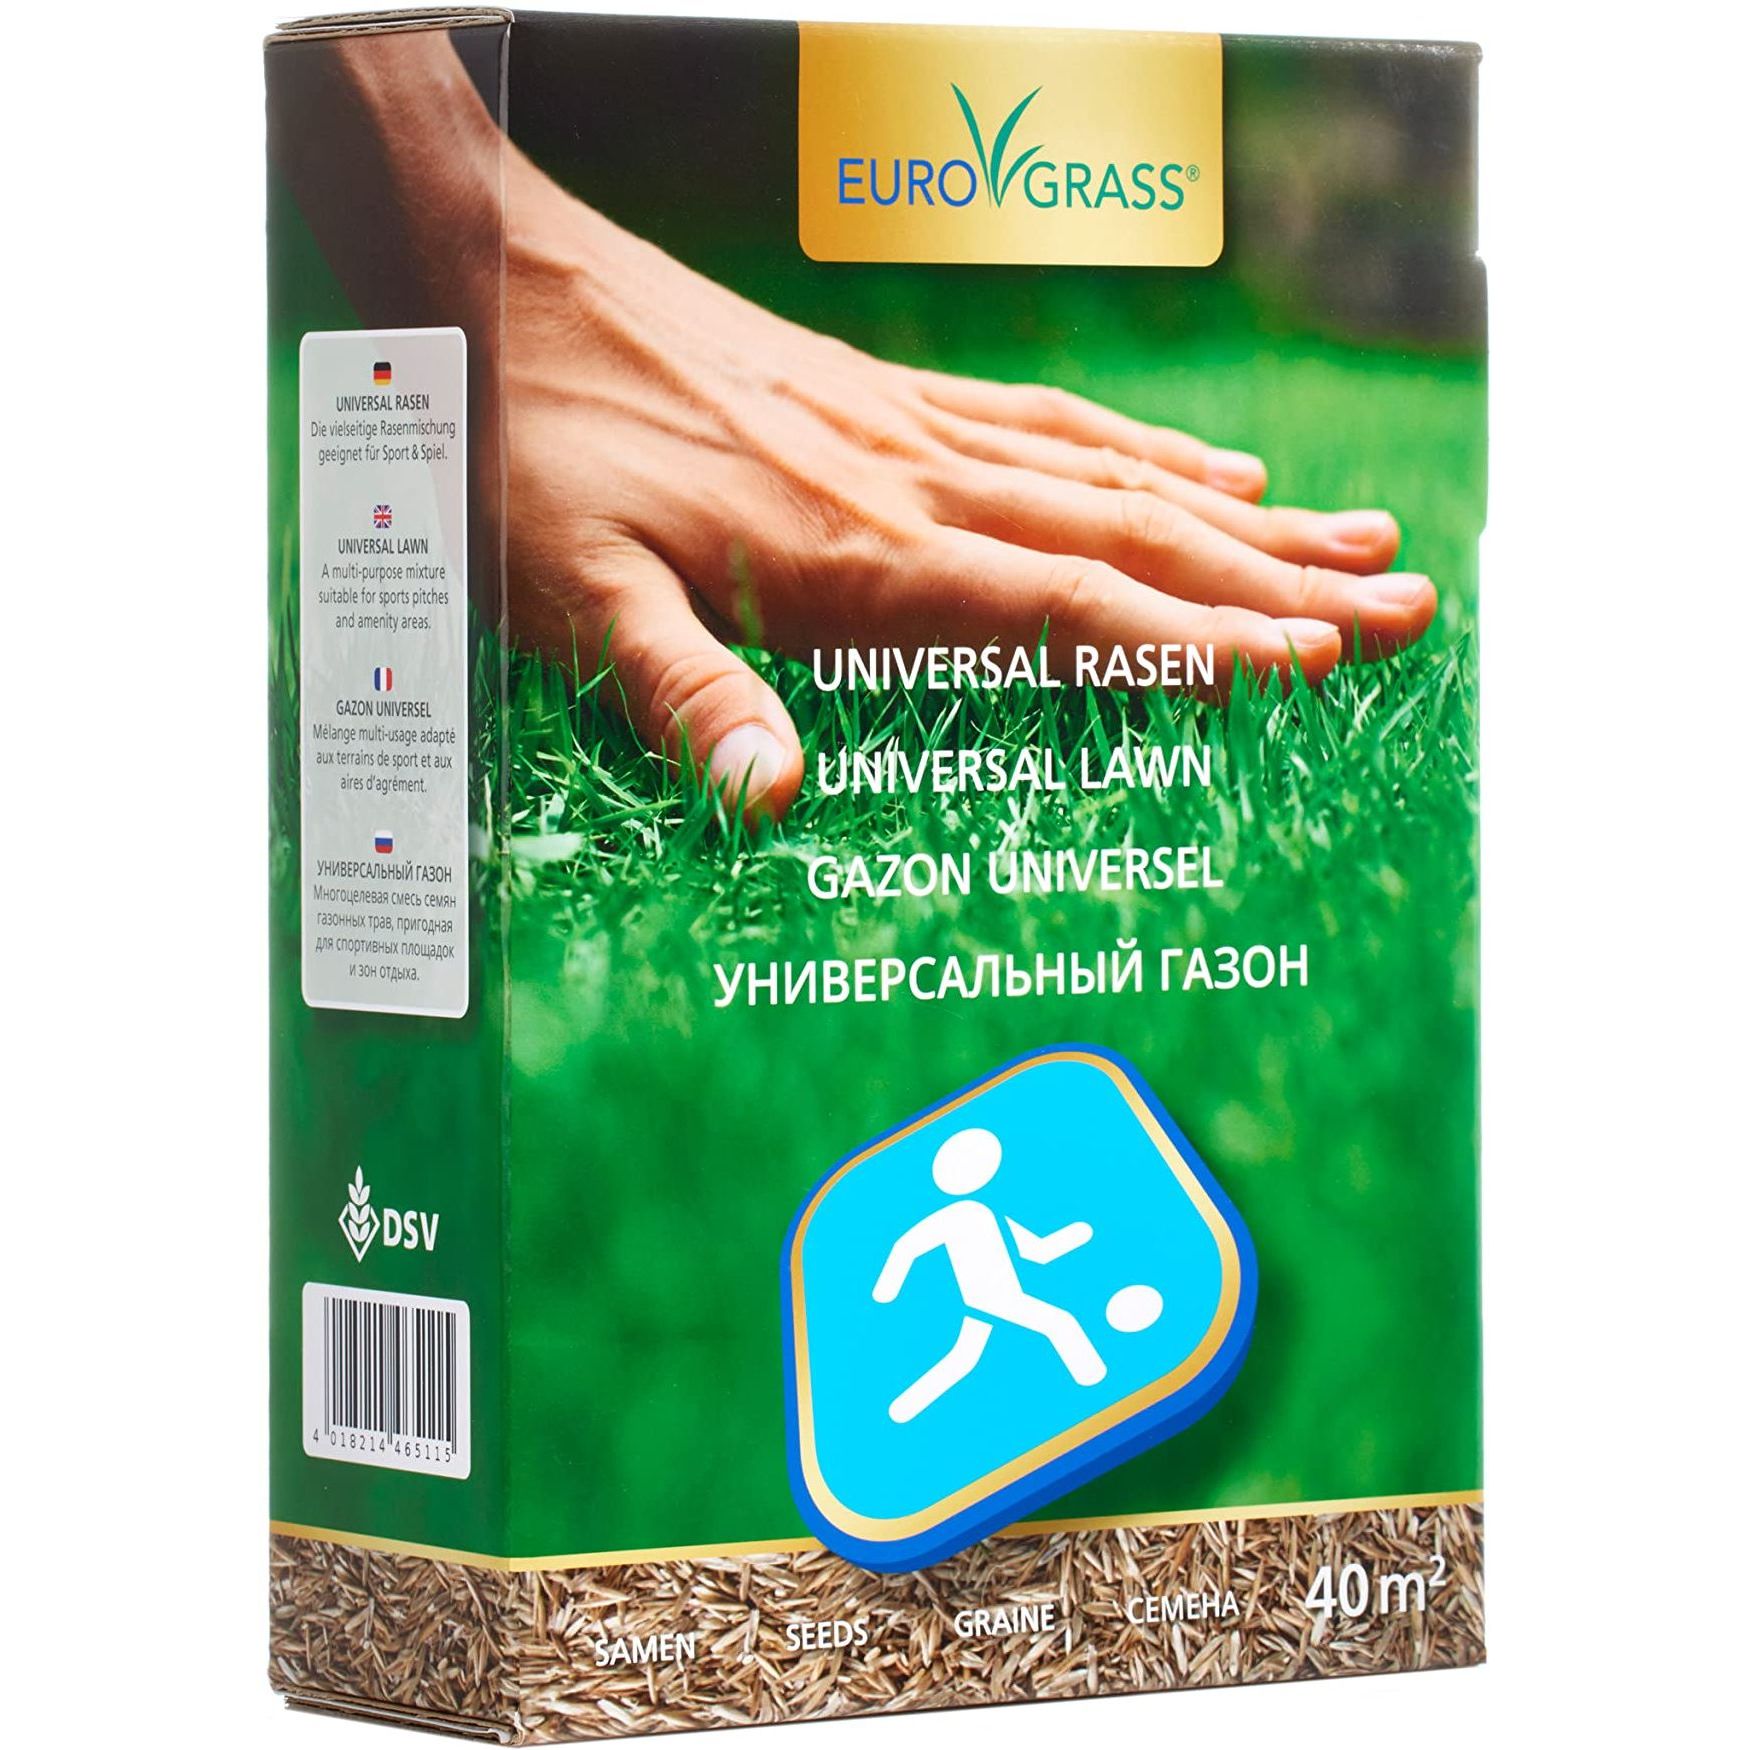 Газон универсальный Eurograss DIY Universal Lawn 1 кг (000024379) - фото 1